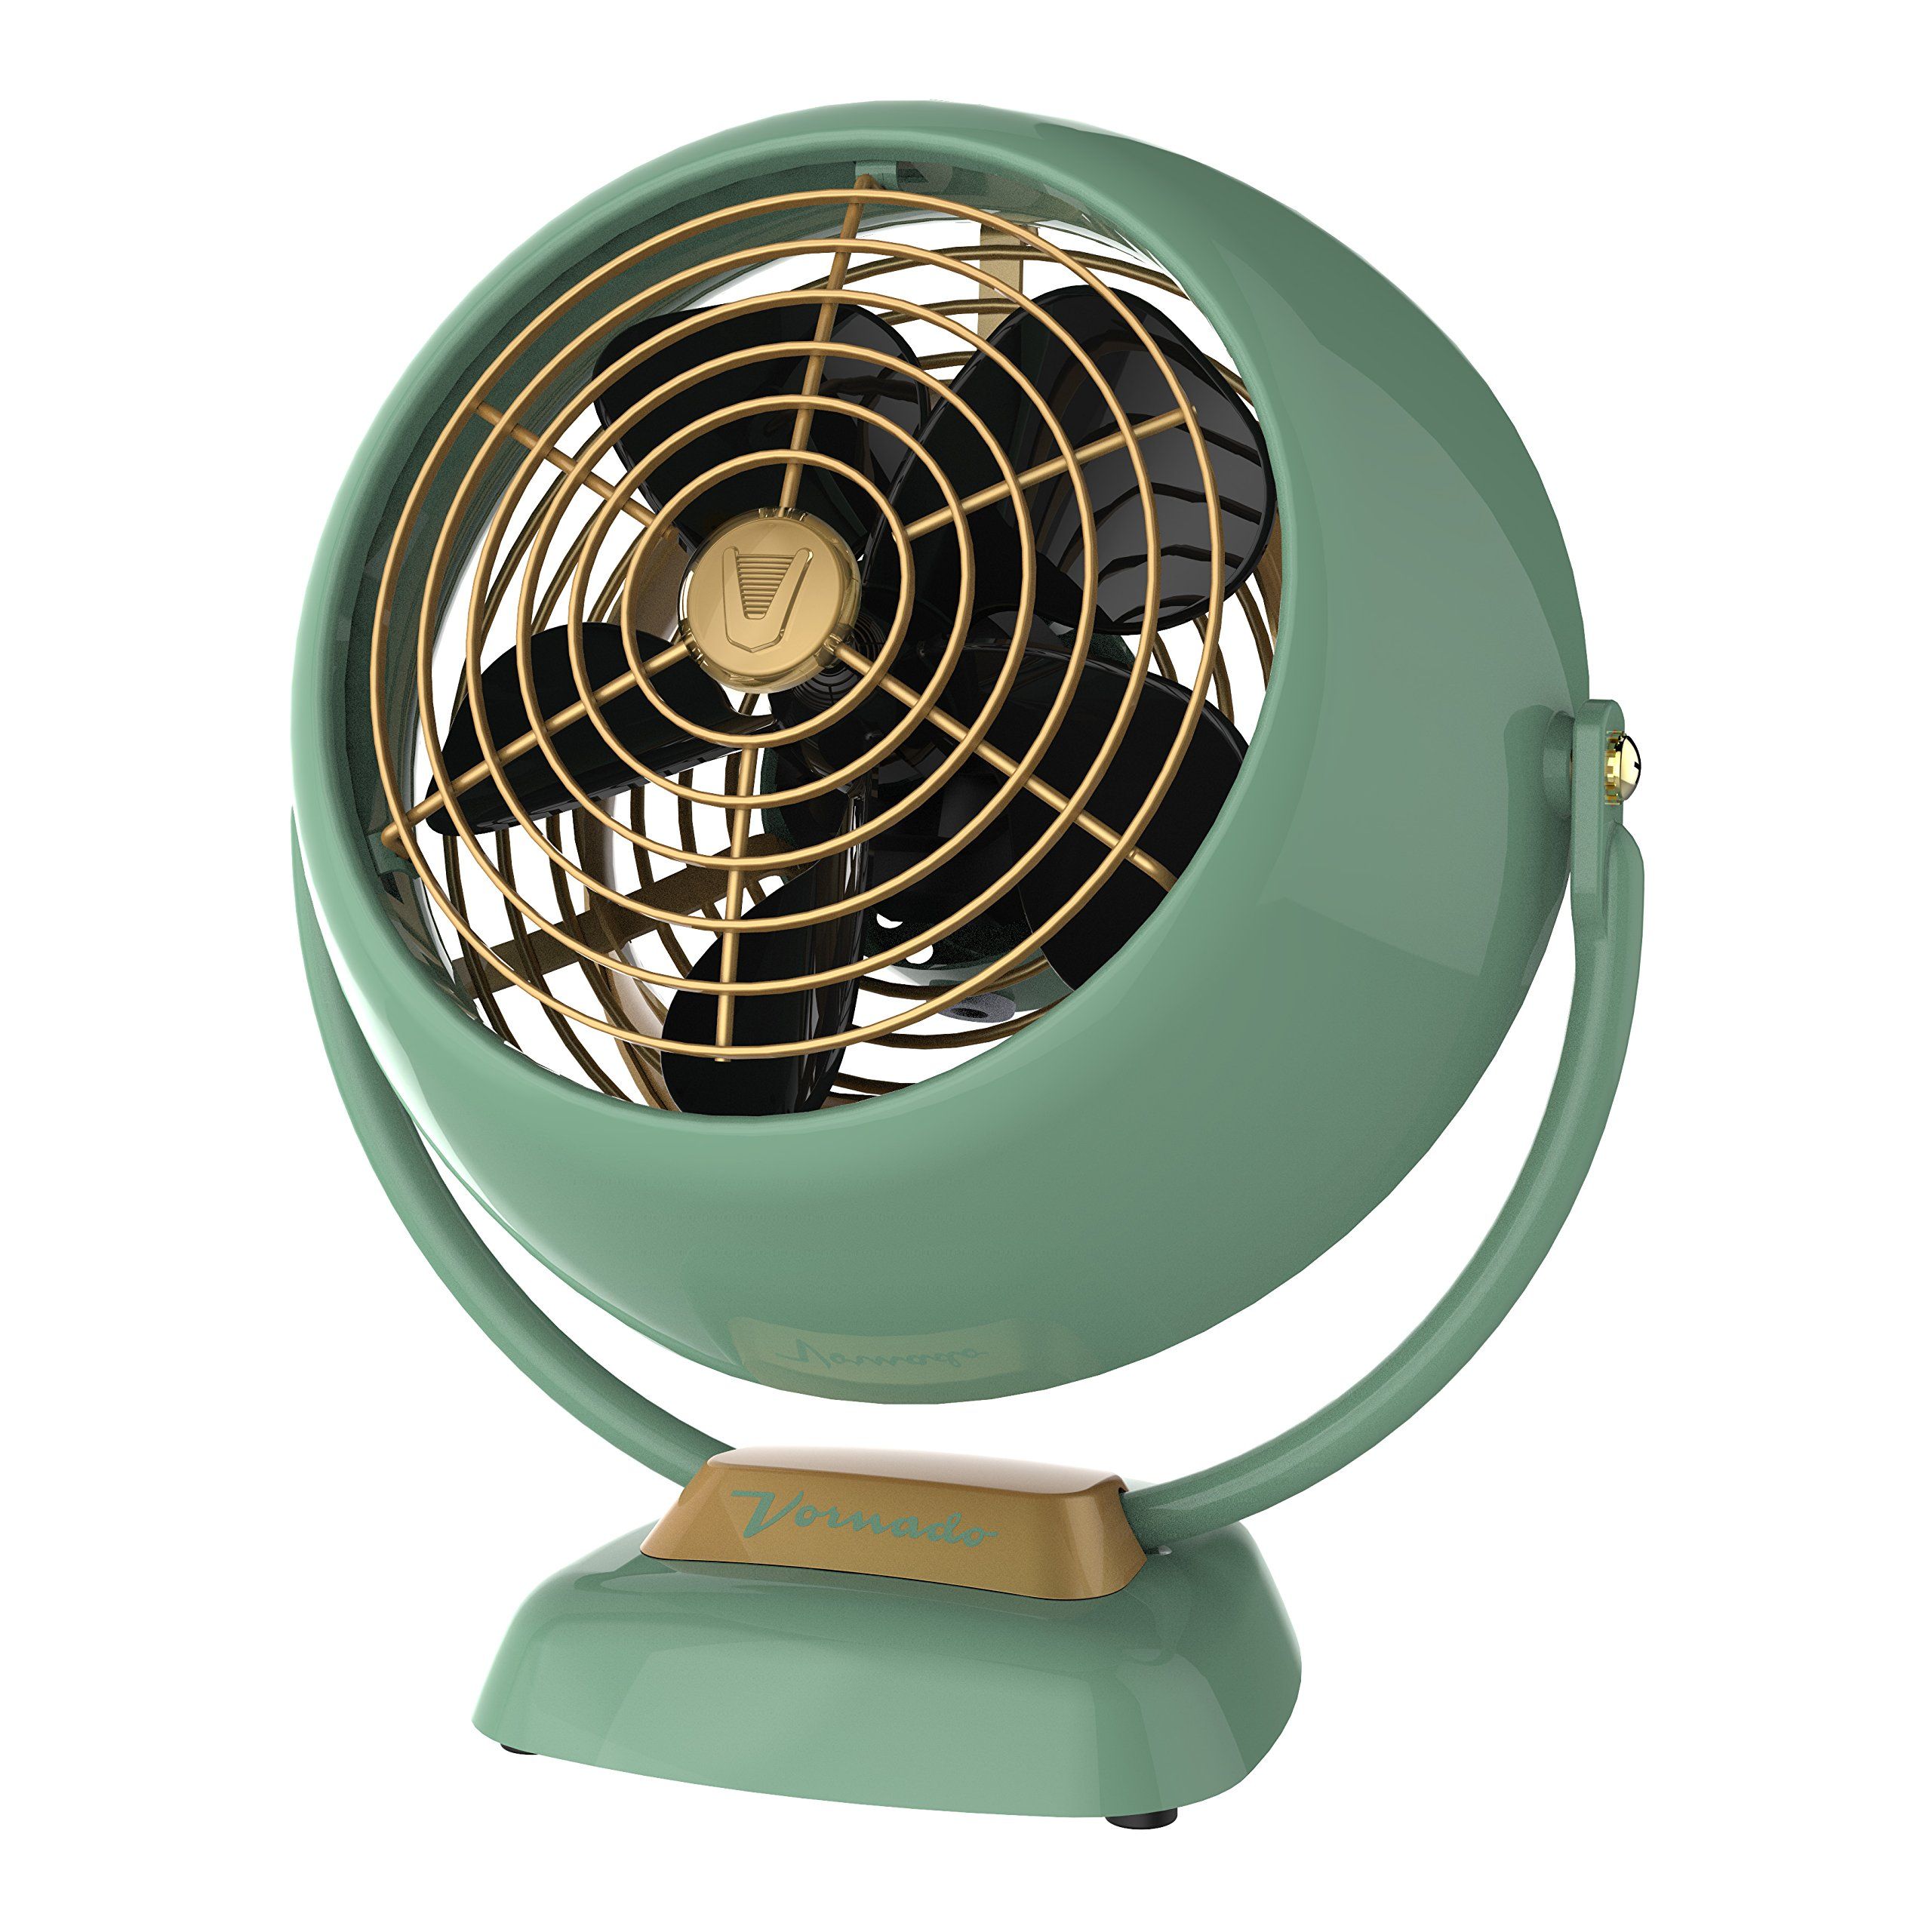 Vornado VFAN Jr. Vintage Air Circulator Fan, Green | Amazon (US)